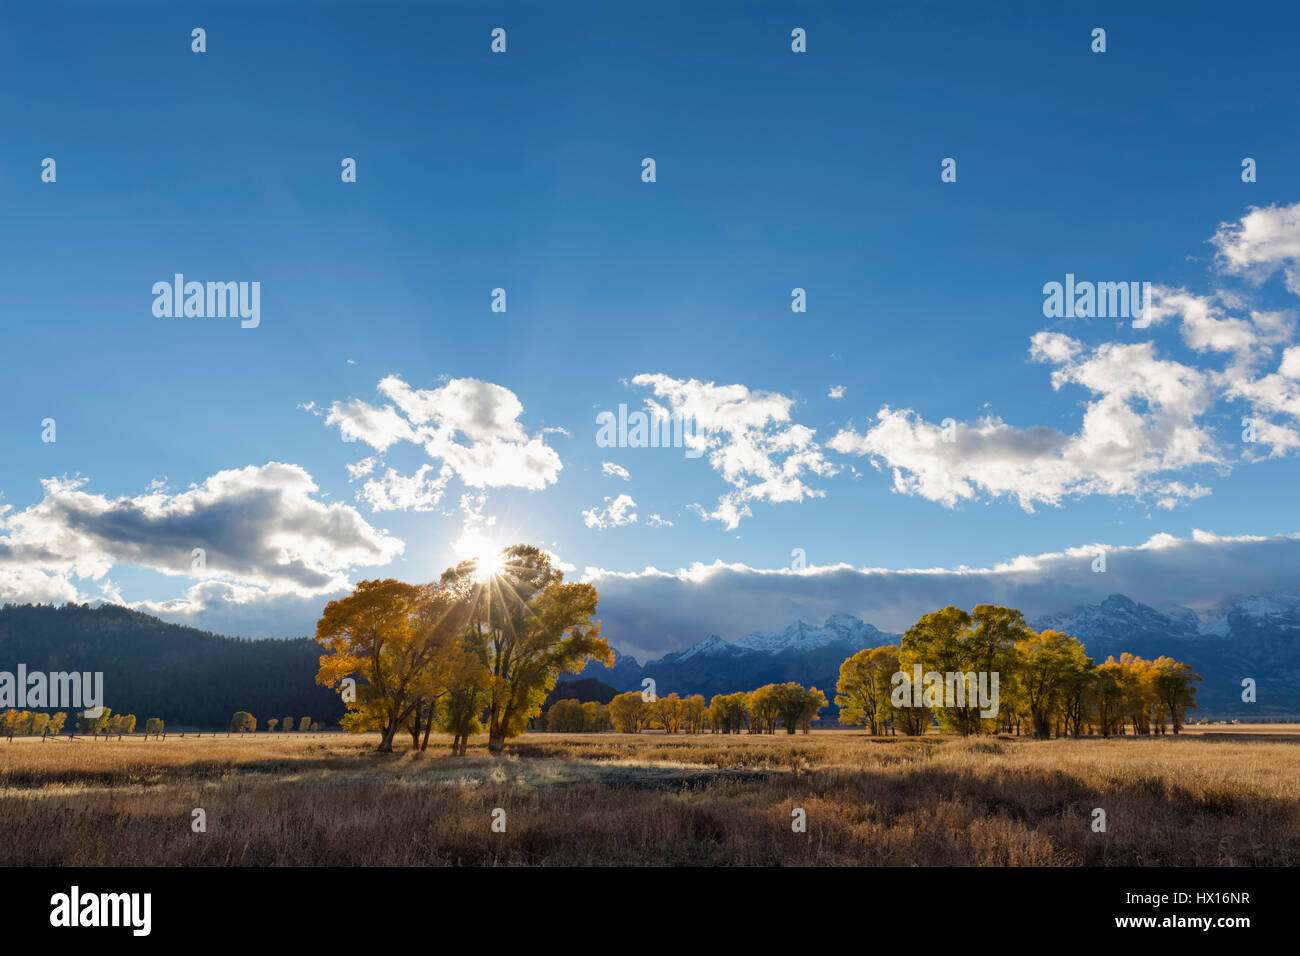 USA, Wyoming, Rocky Mountains, Grand Teton National Park, aspens in autumn Stock Photo